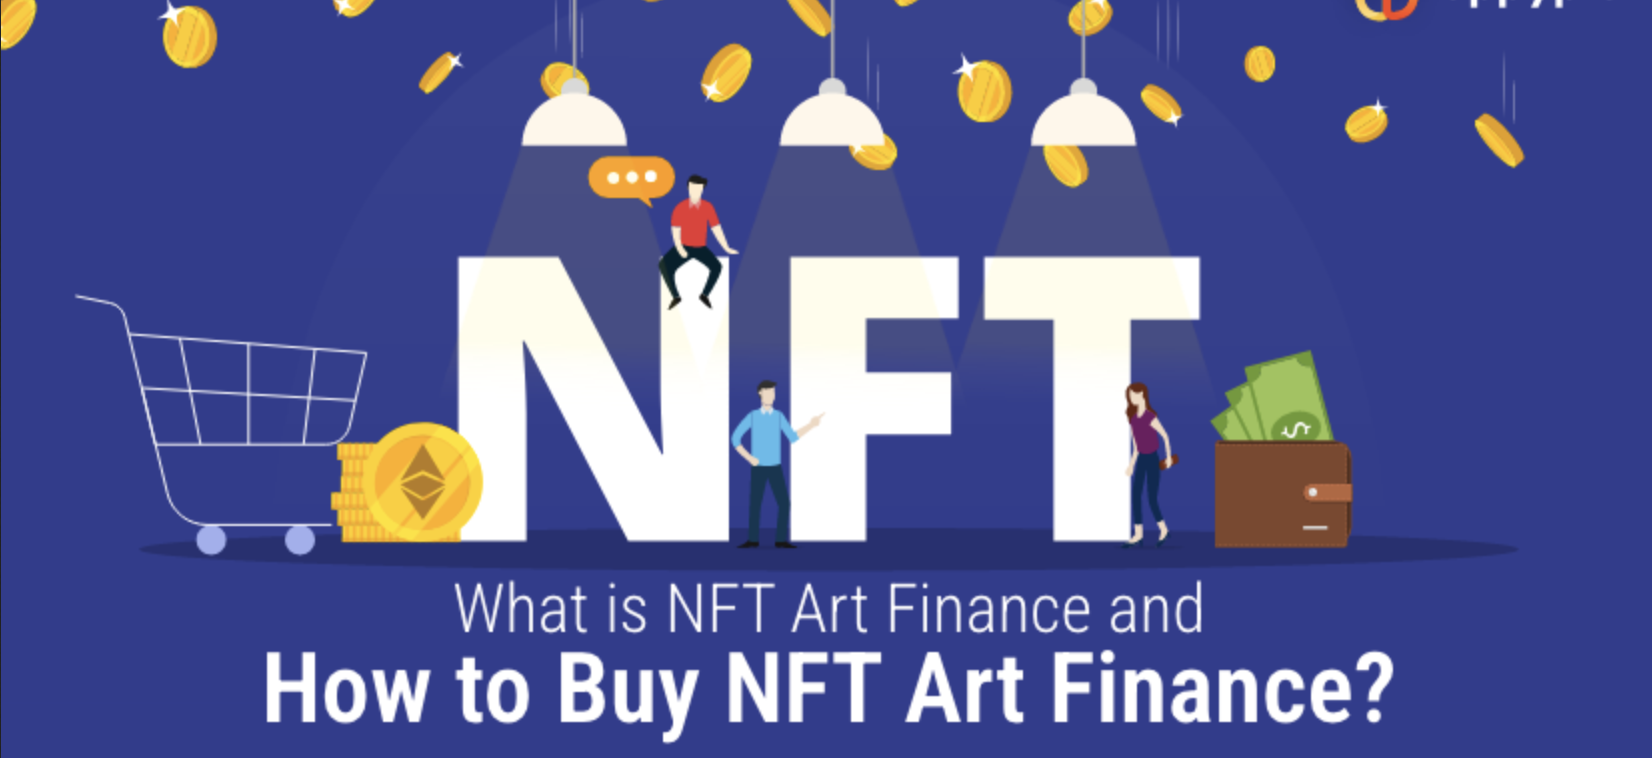 What is NFT Art Finance? Instructions to Buy NFT Art Finance in Detail